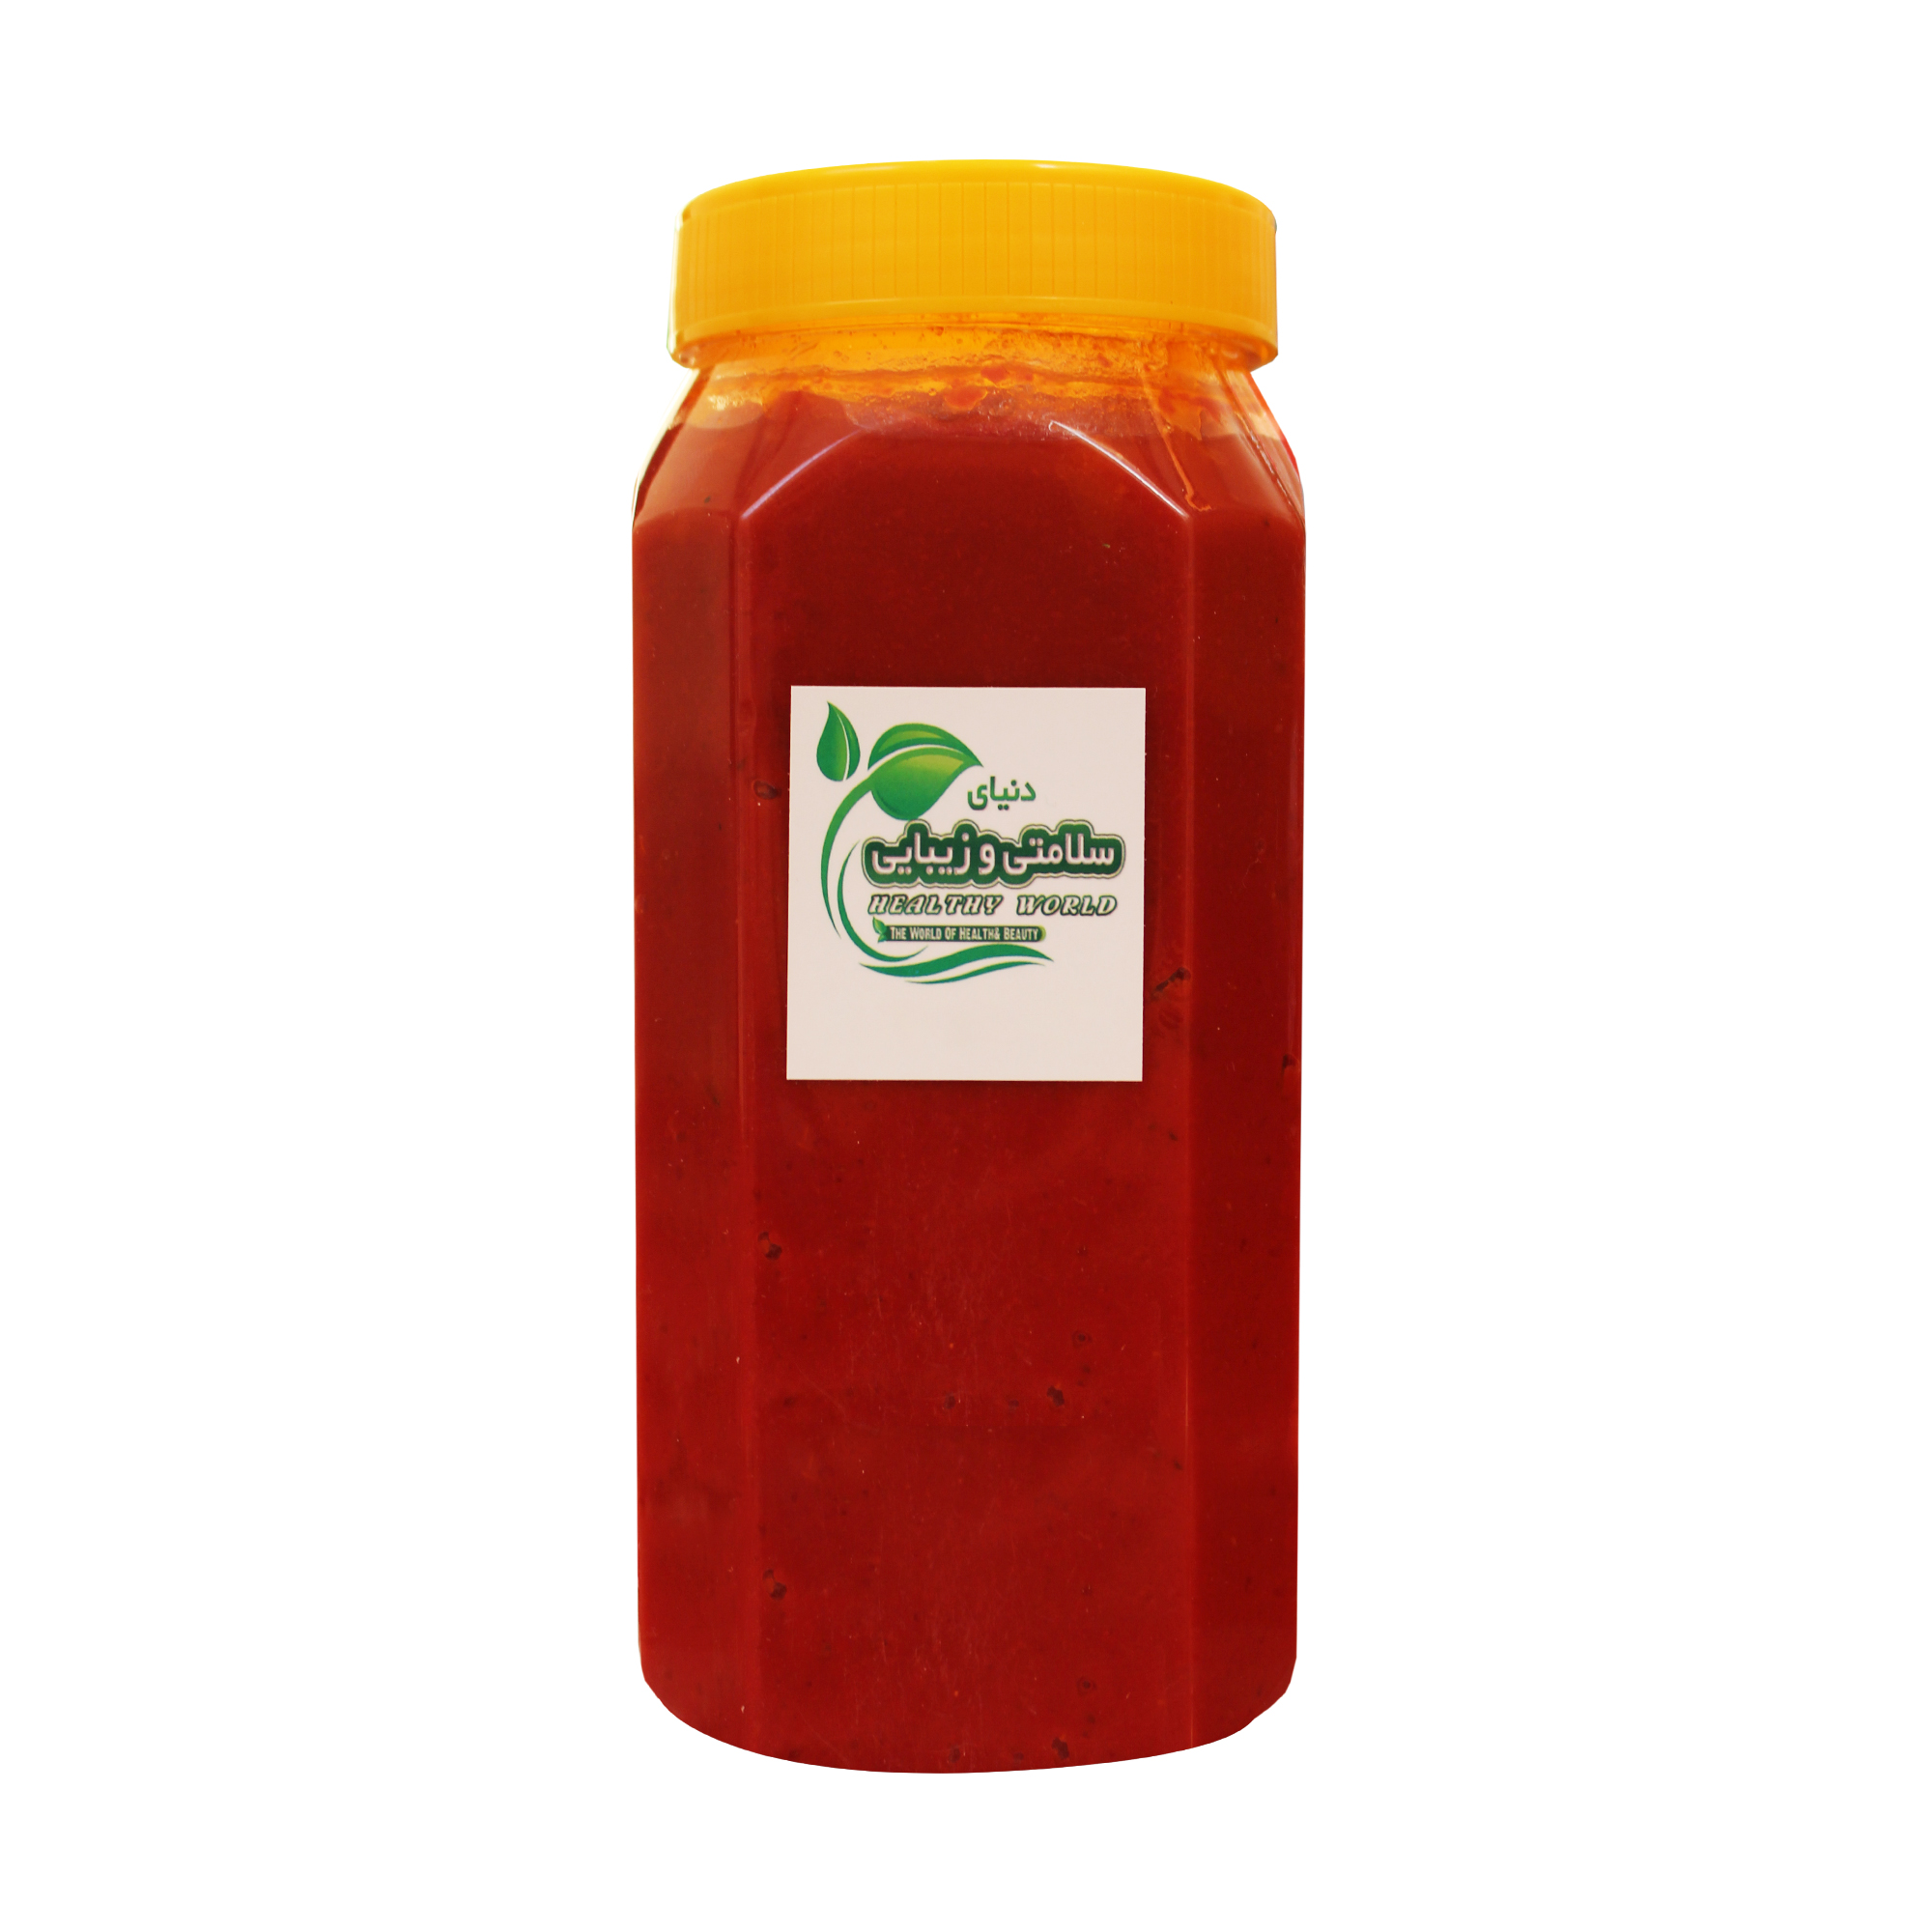 رب گوجه فرنگی خانگی - 1 کیلوگرم